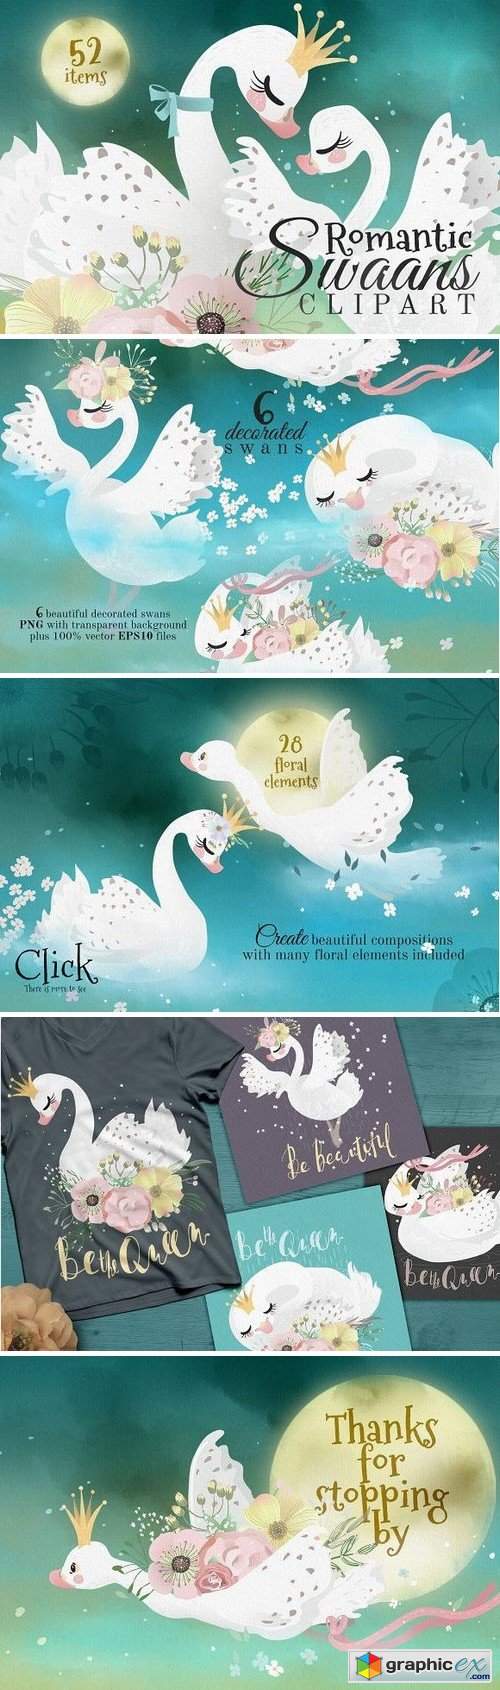 Romantic Swans Clipart